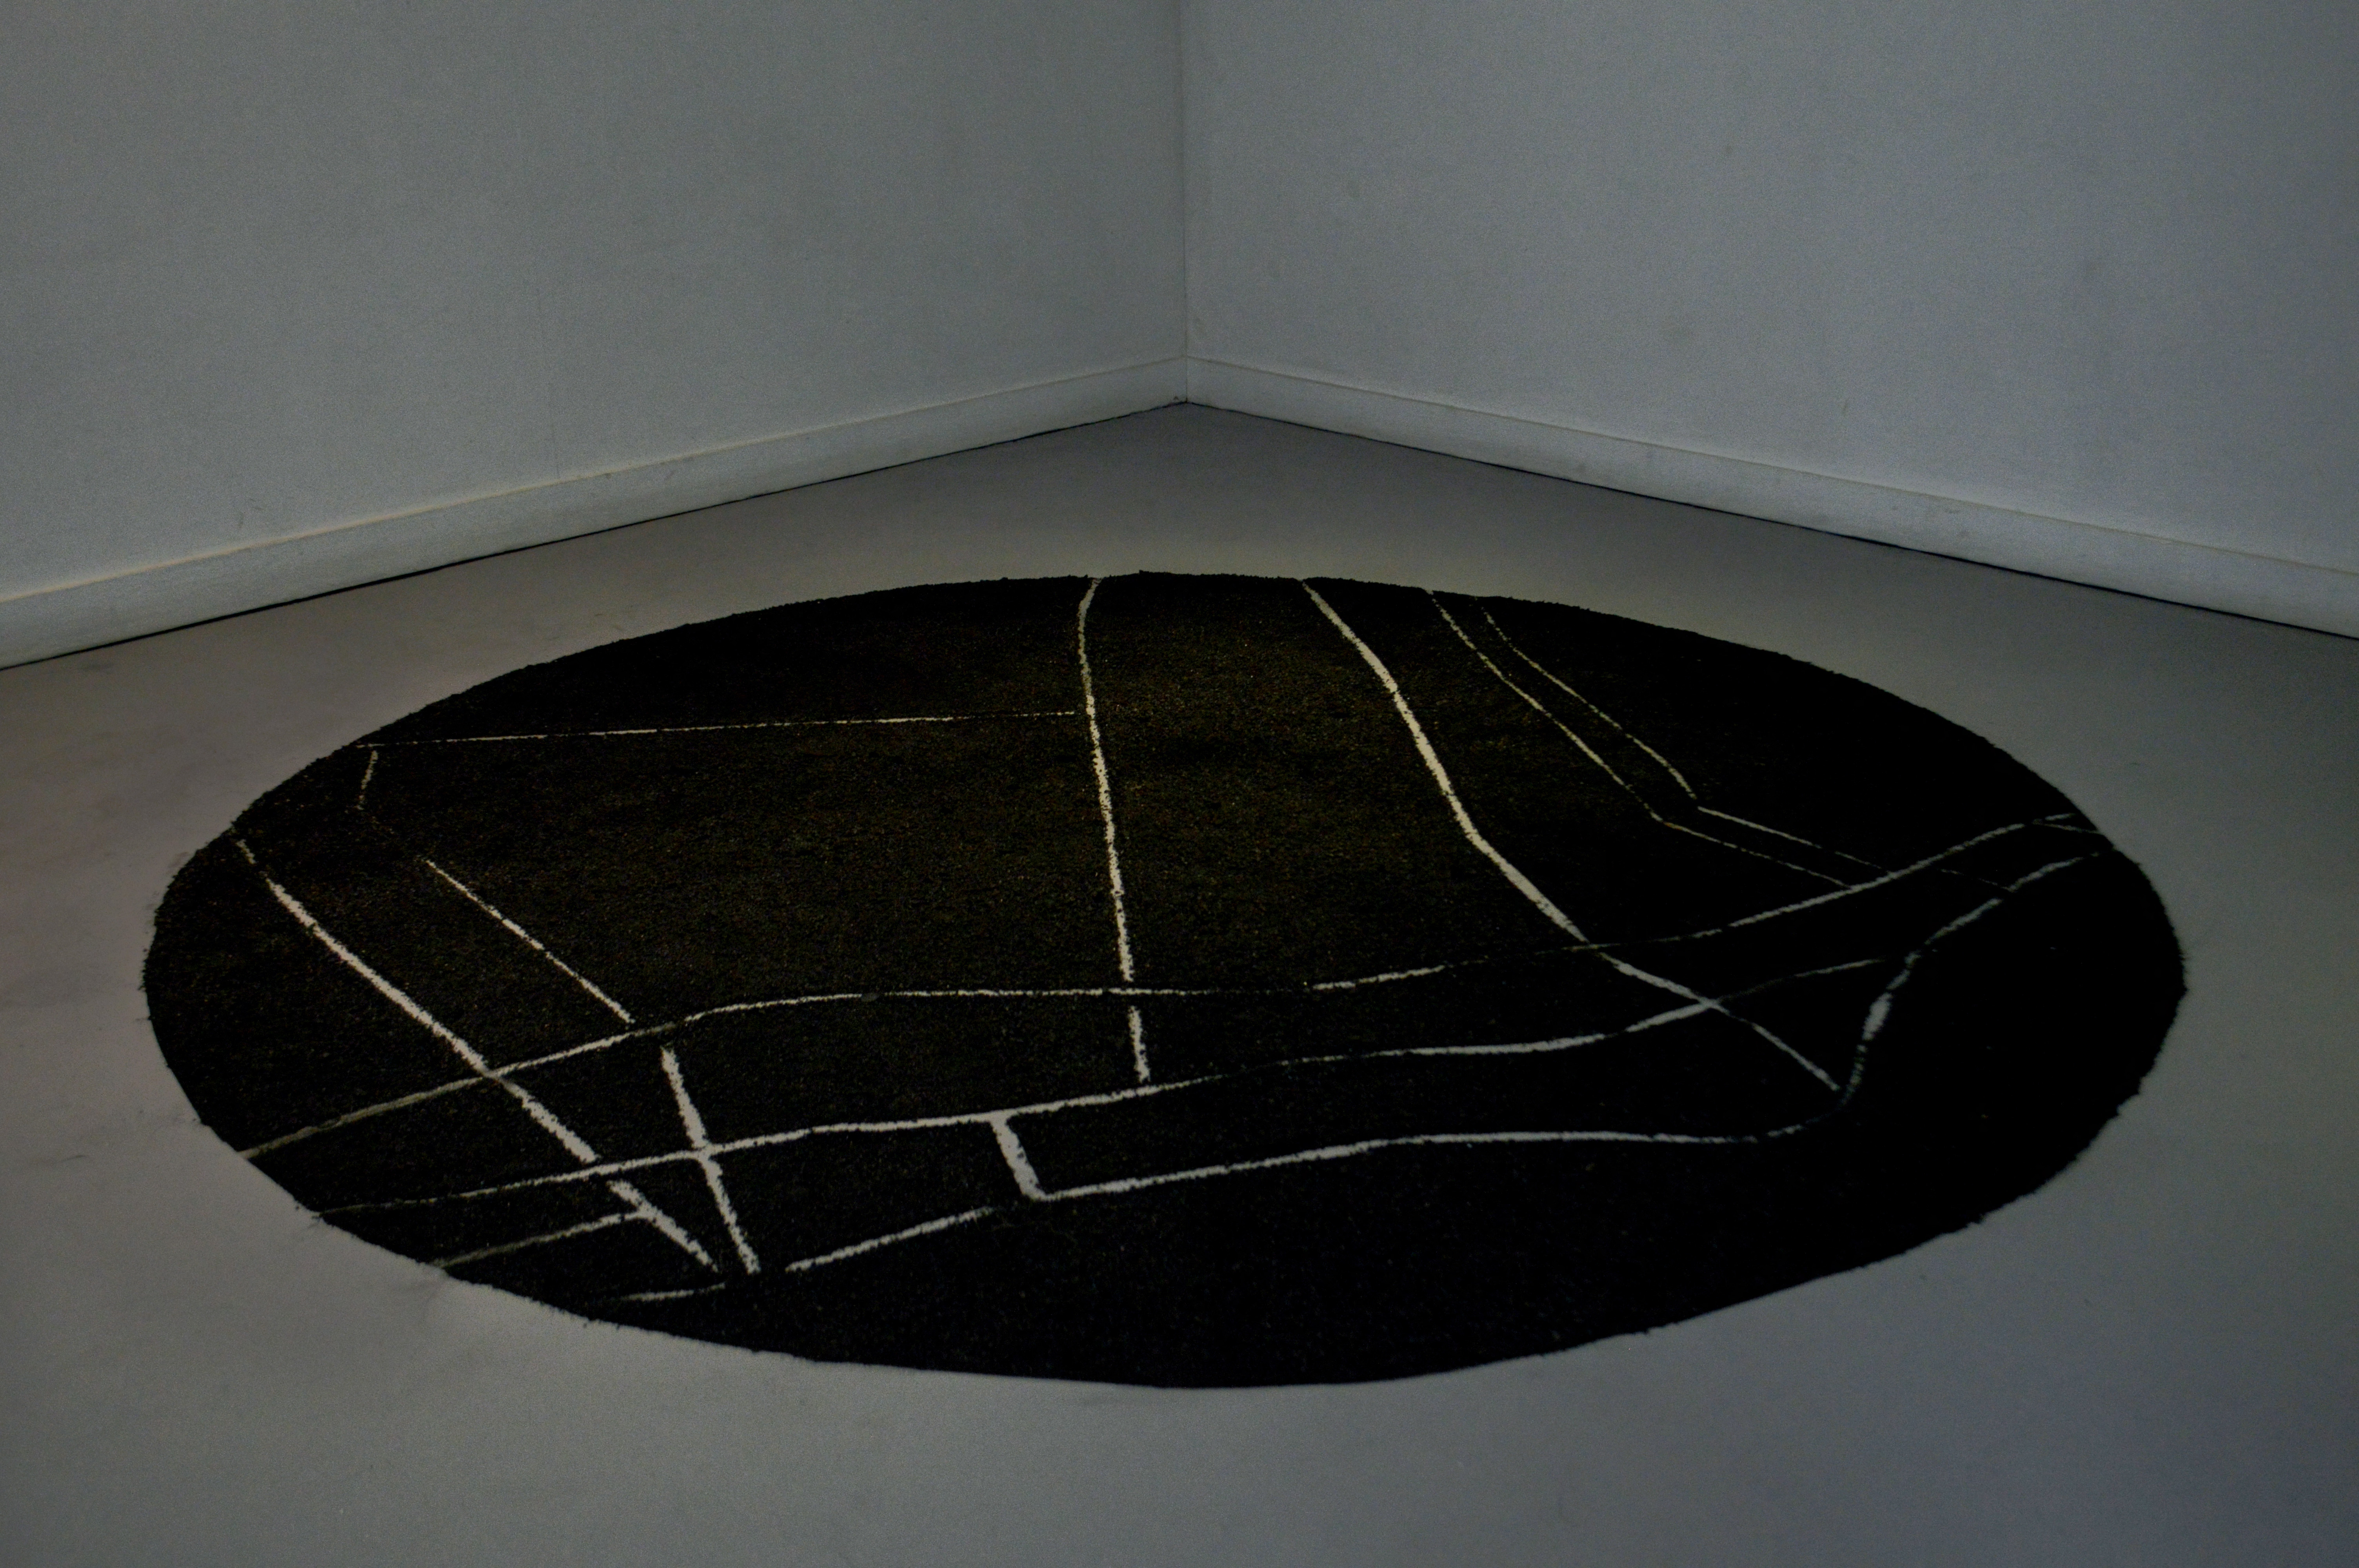 Estey Ducuara, Black Hole, 2018, installation, various dimensions, Mineral coal. Galeria de la Univeridad de la Salle, Bogotá. Image courtesy of the artist. 